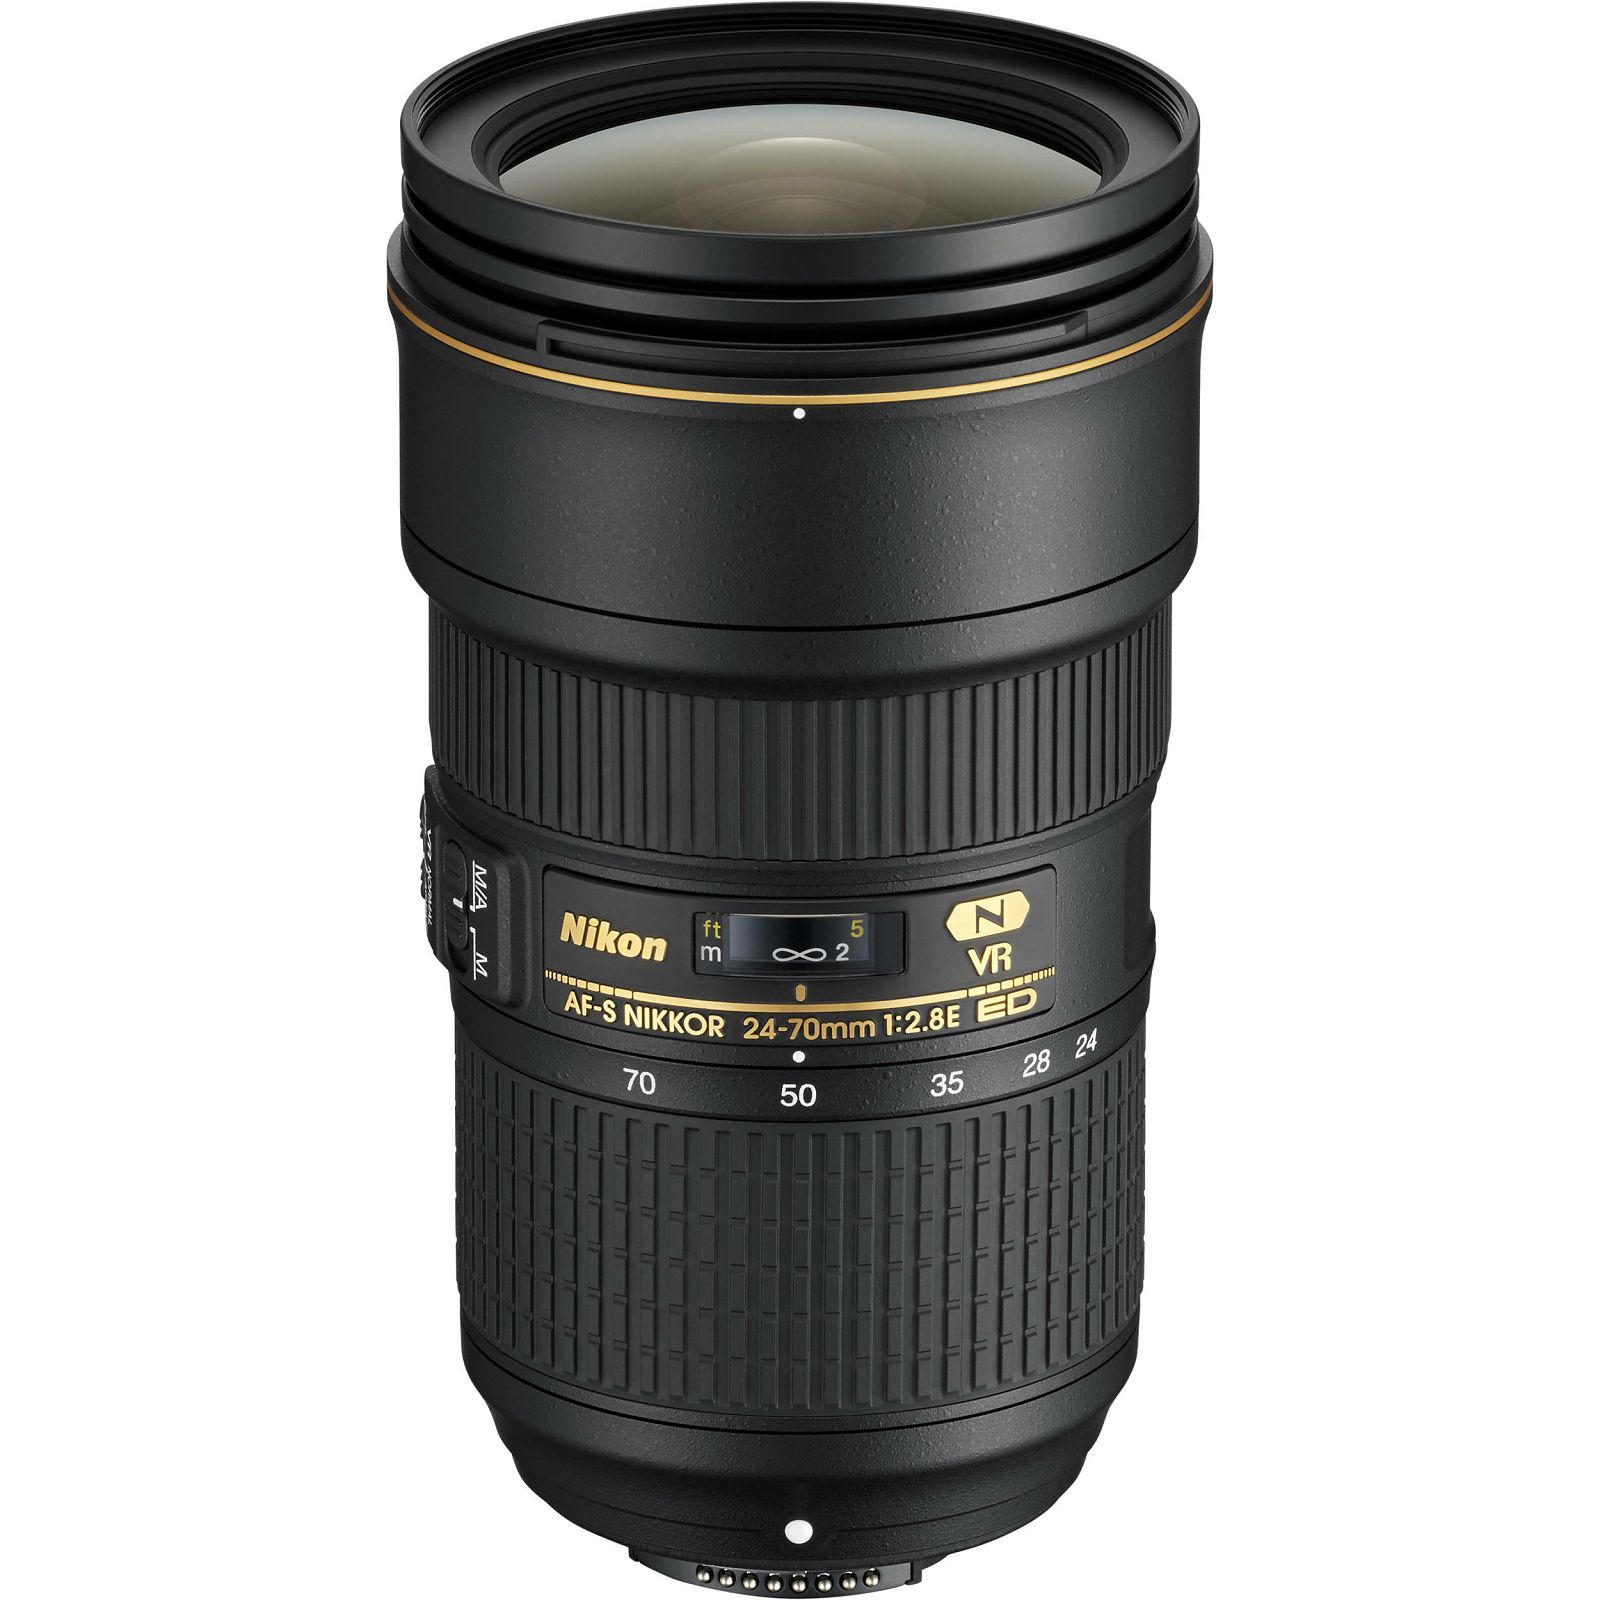 Nikon AF-S 24-70mm f/2.8E ED VR standardni objektiv Nikkor 24-70 F2.8 2.8 zoom lens (JAA824DA)